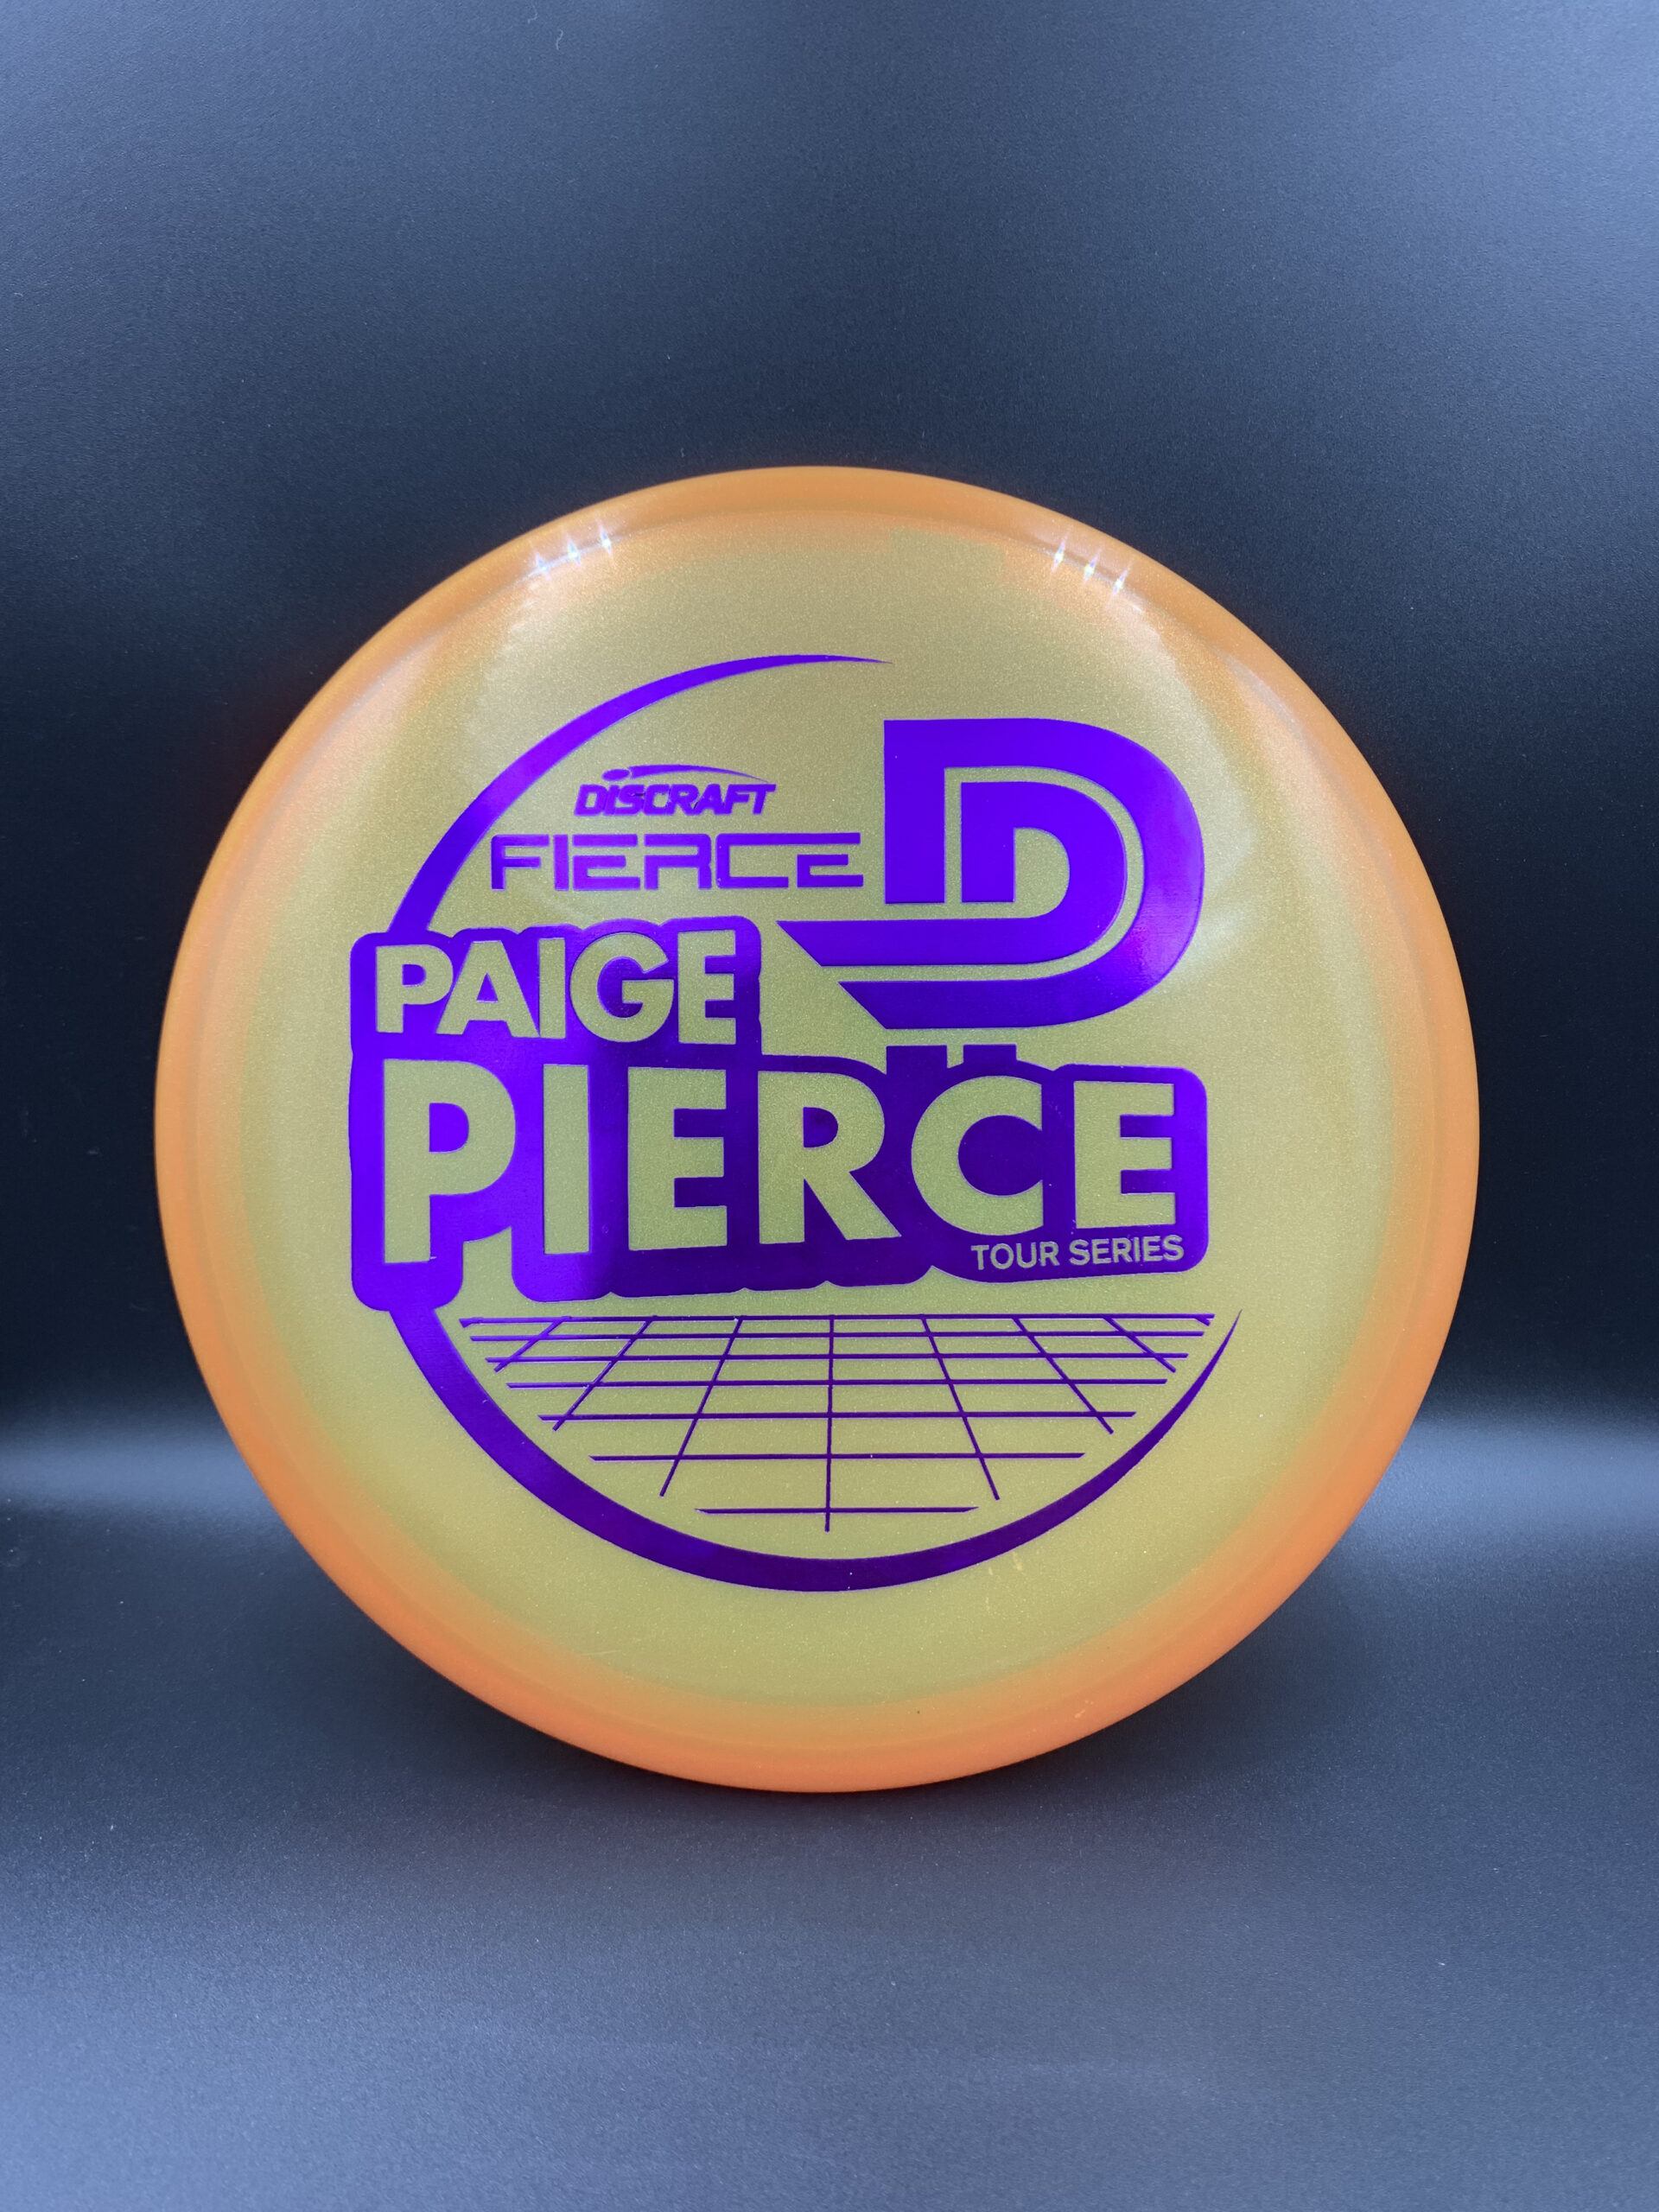 Tour Series Paige Pierce Fierce disc golf putter by Discraft